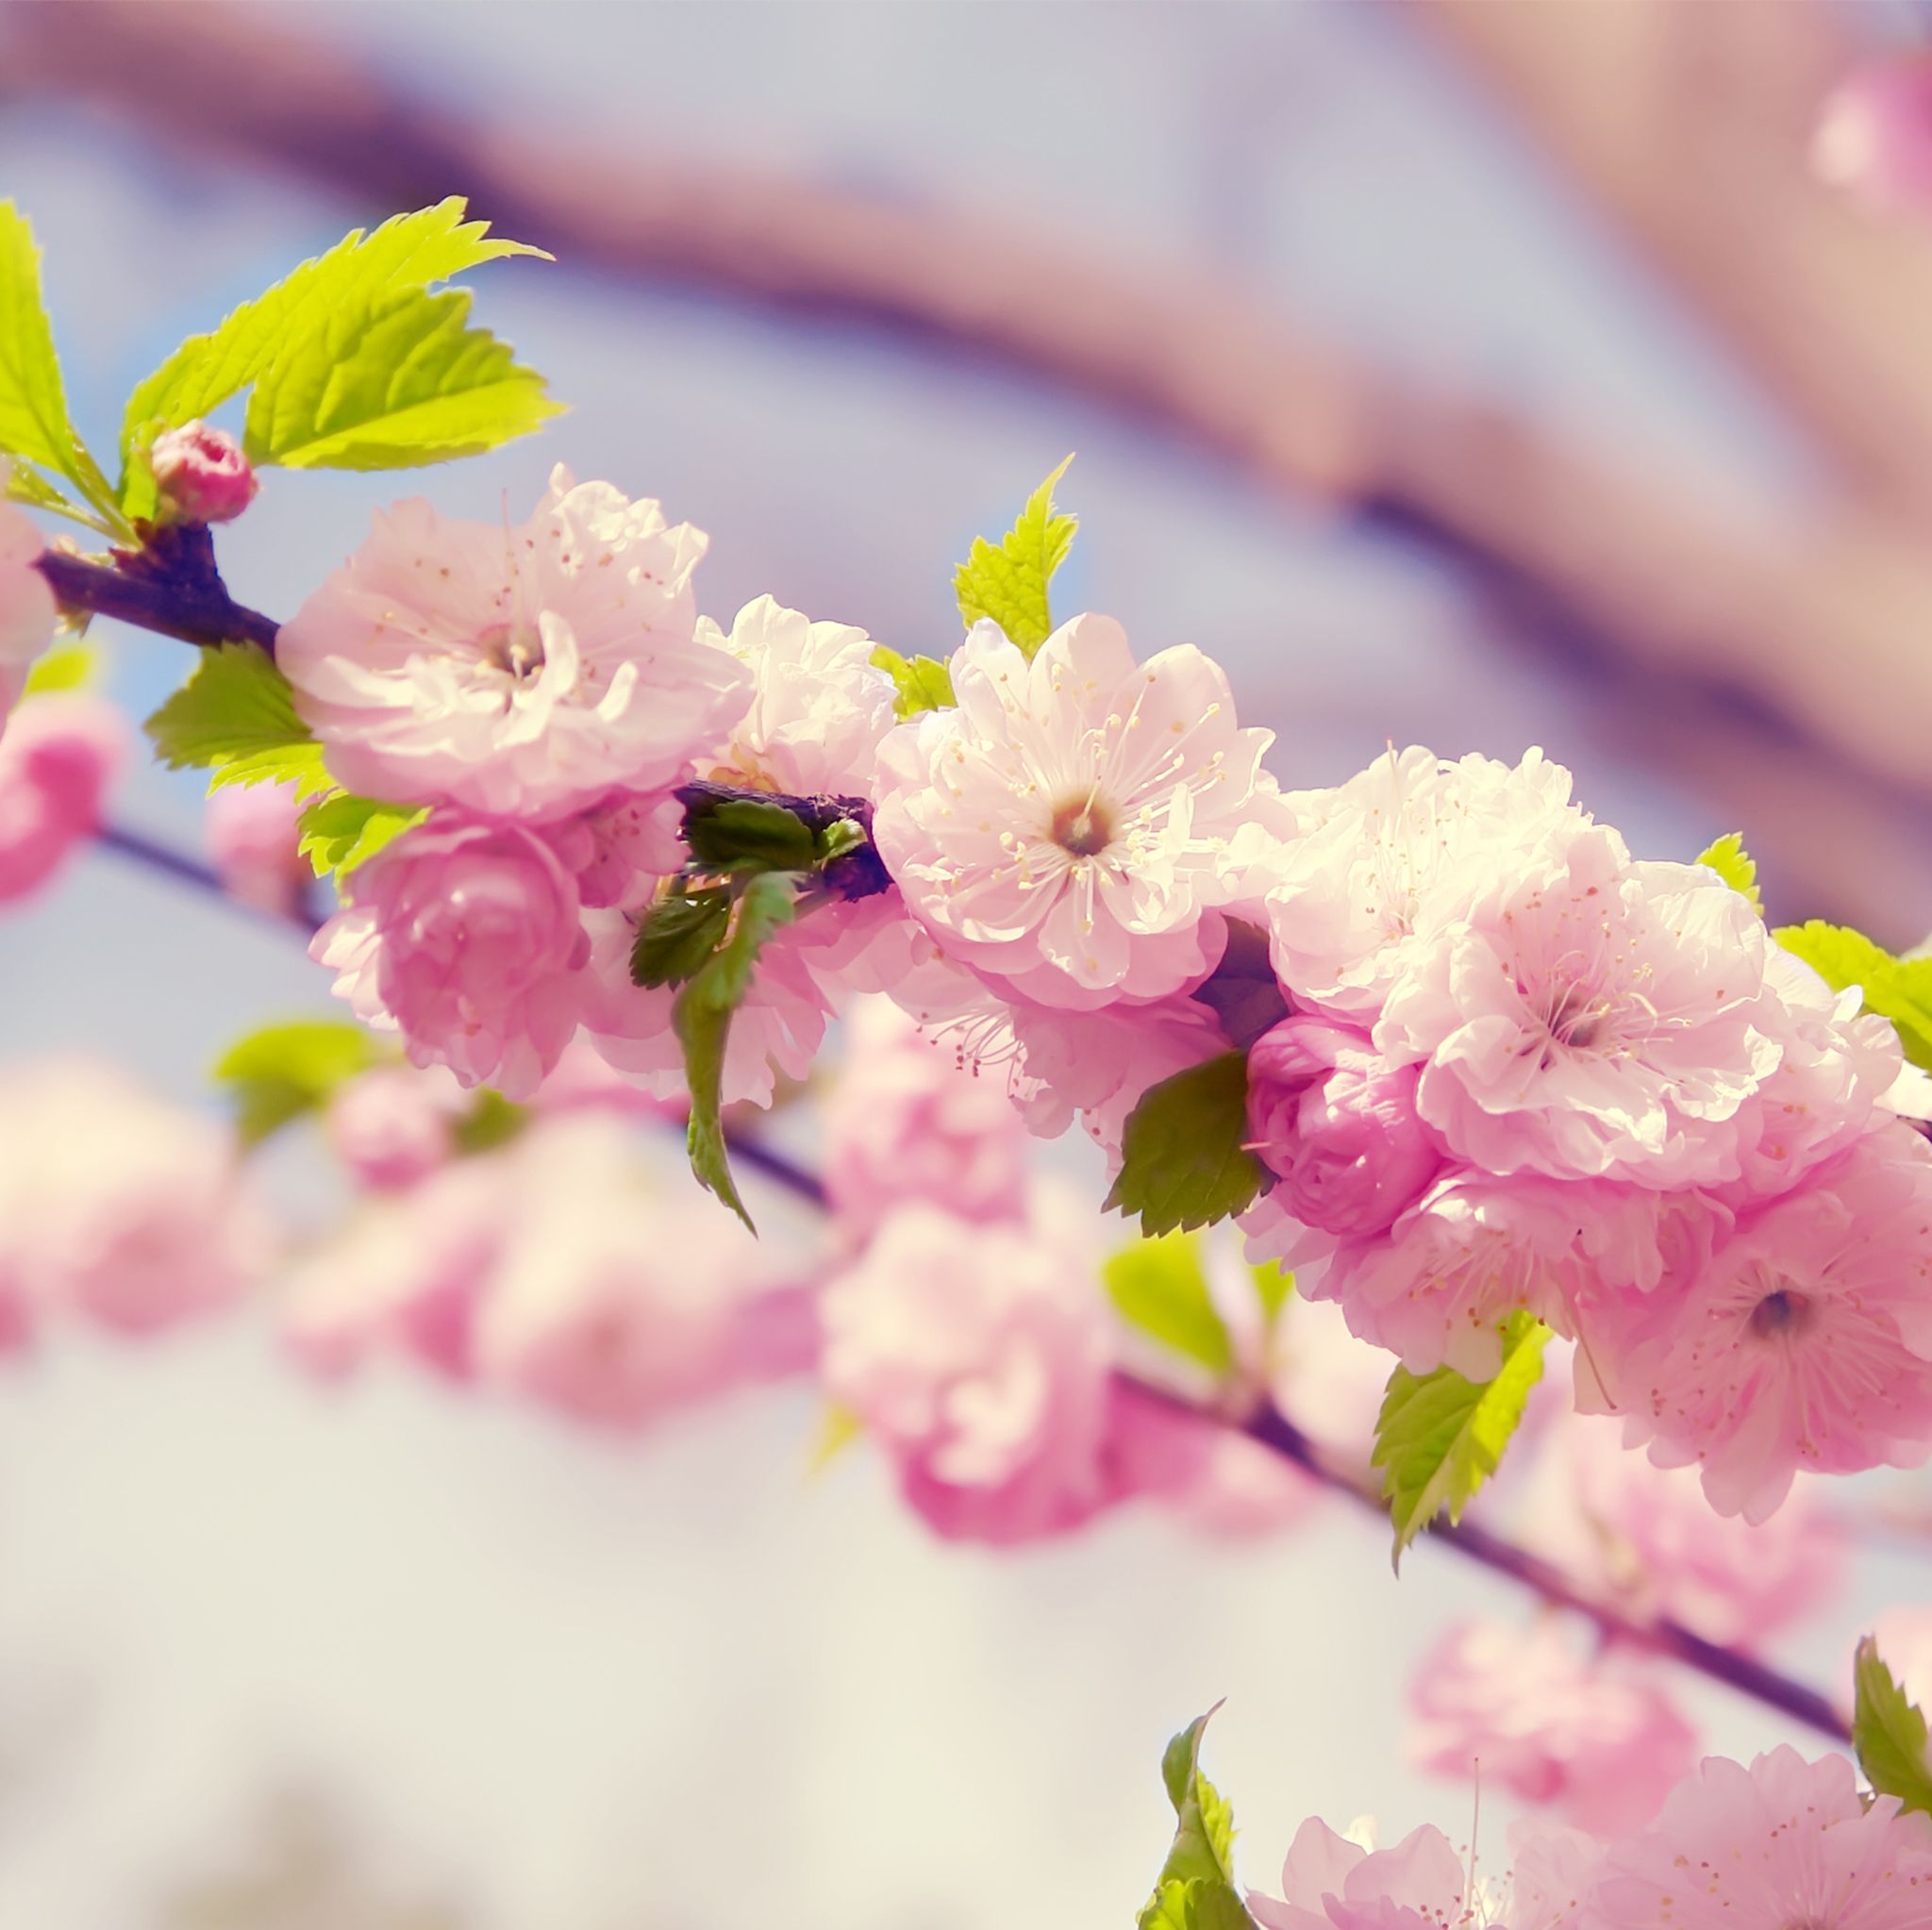 والپیپر فوق العاده قشنگ از شکوفه های صورتی هلو 